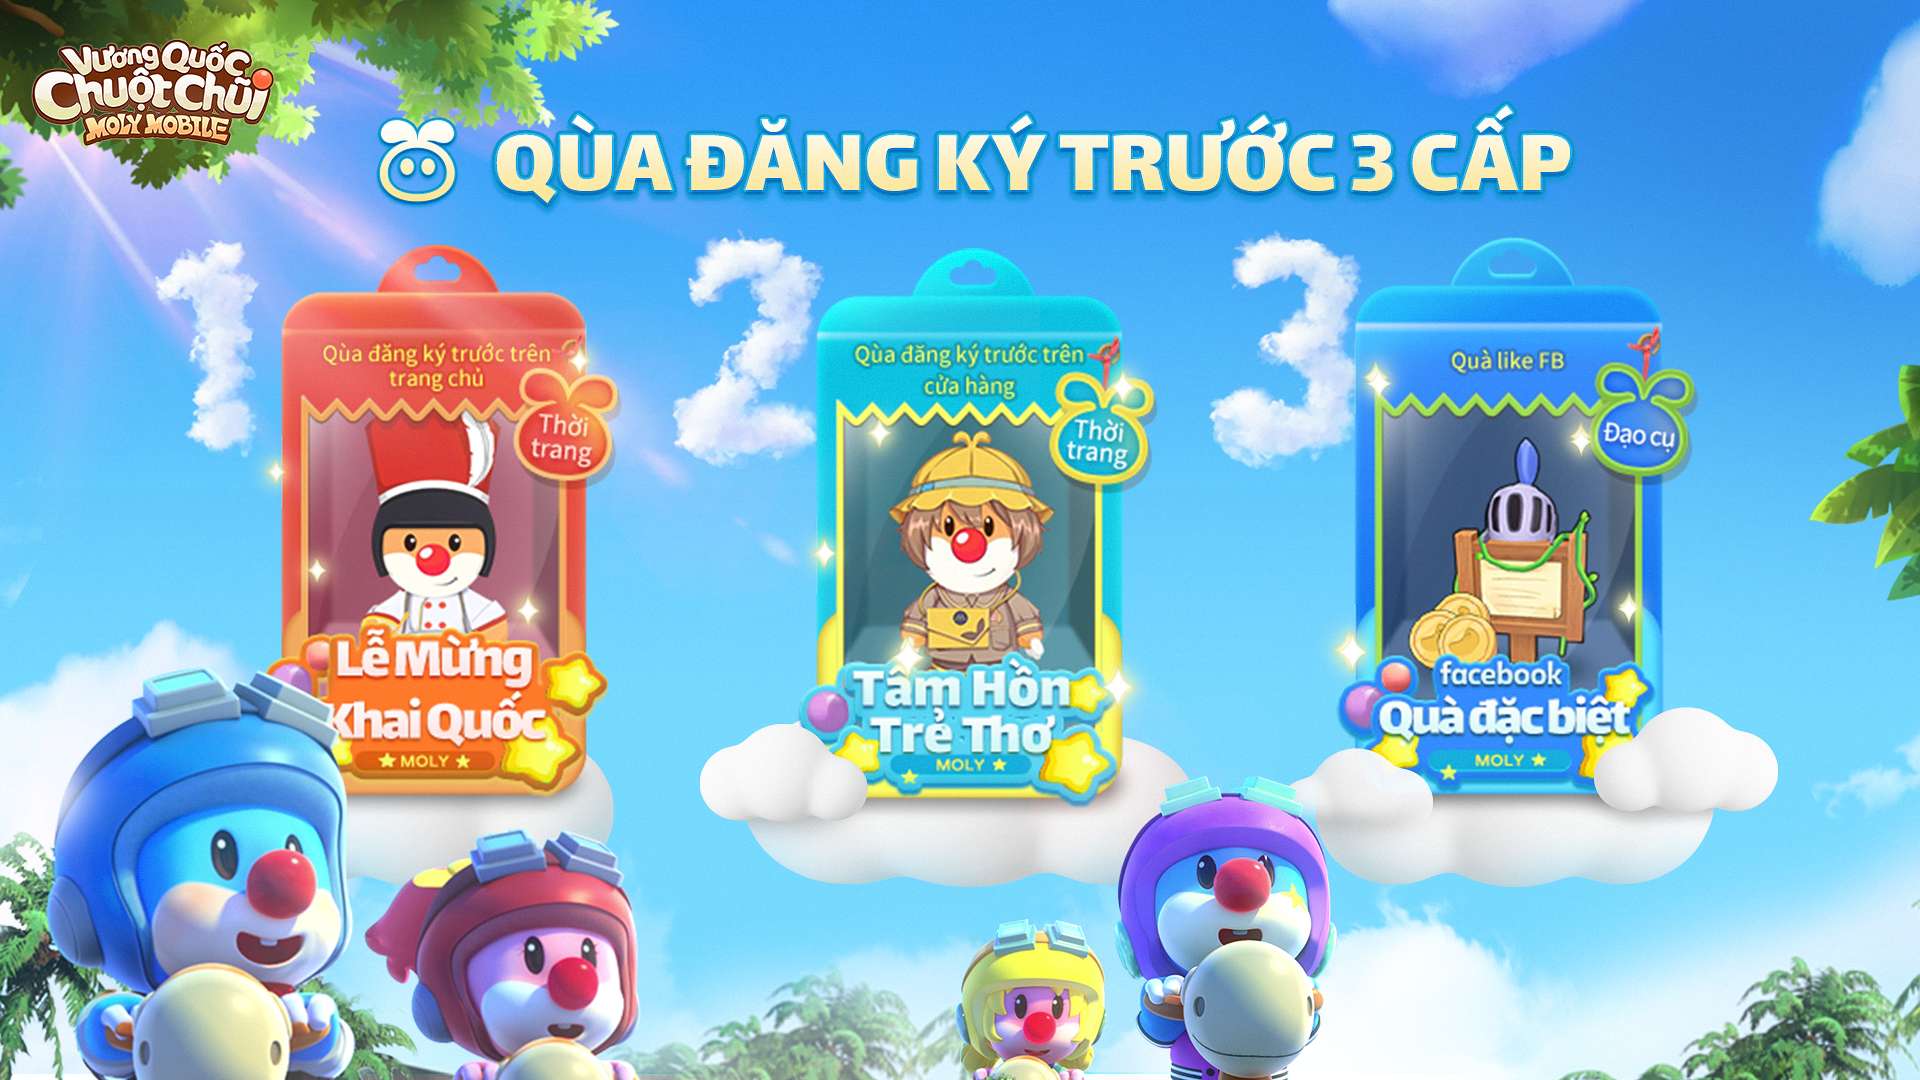 Game mobile kinh điển tuổi thơ Vương Quốc Chuột Chũi hôm nay mở đăng ký trước, gửi nhiều quà tặng